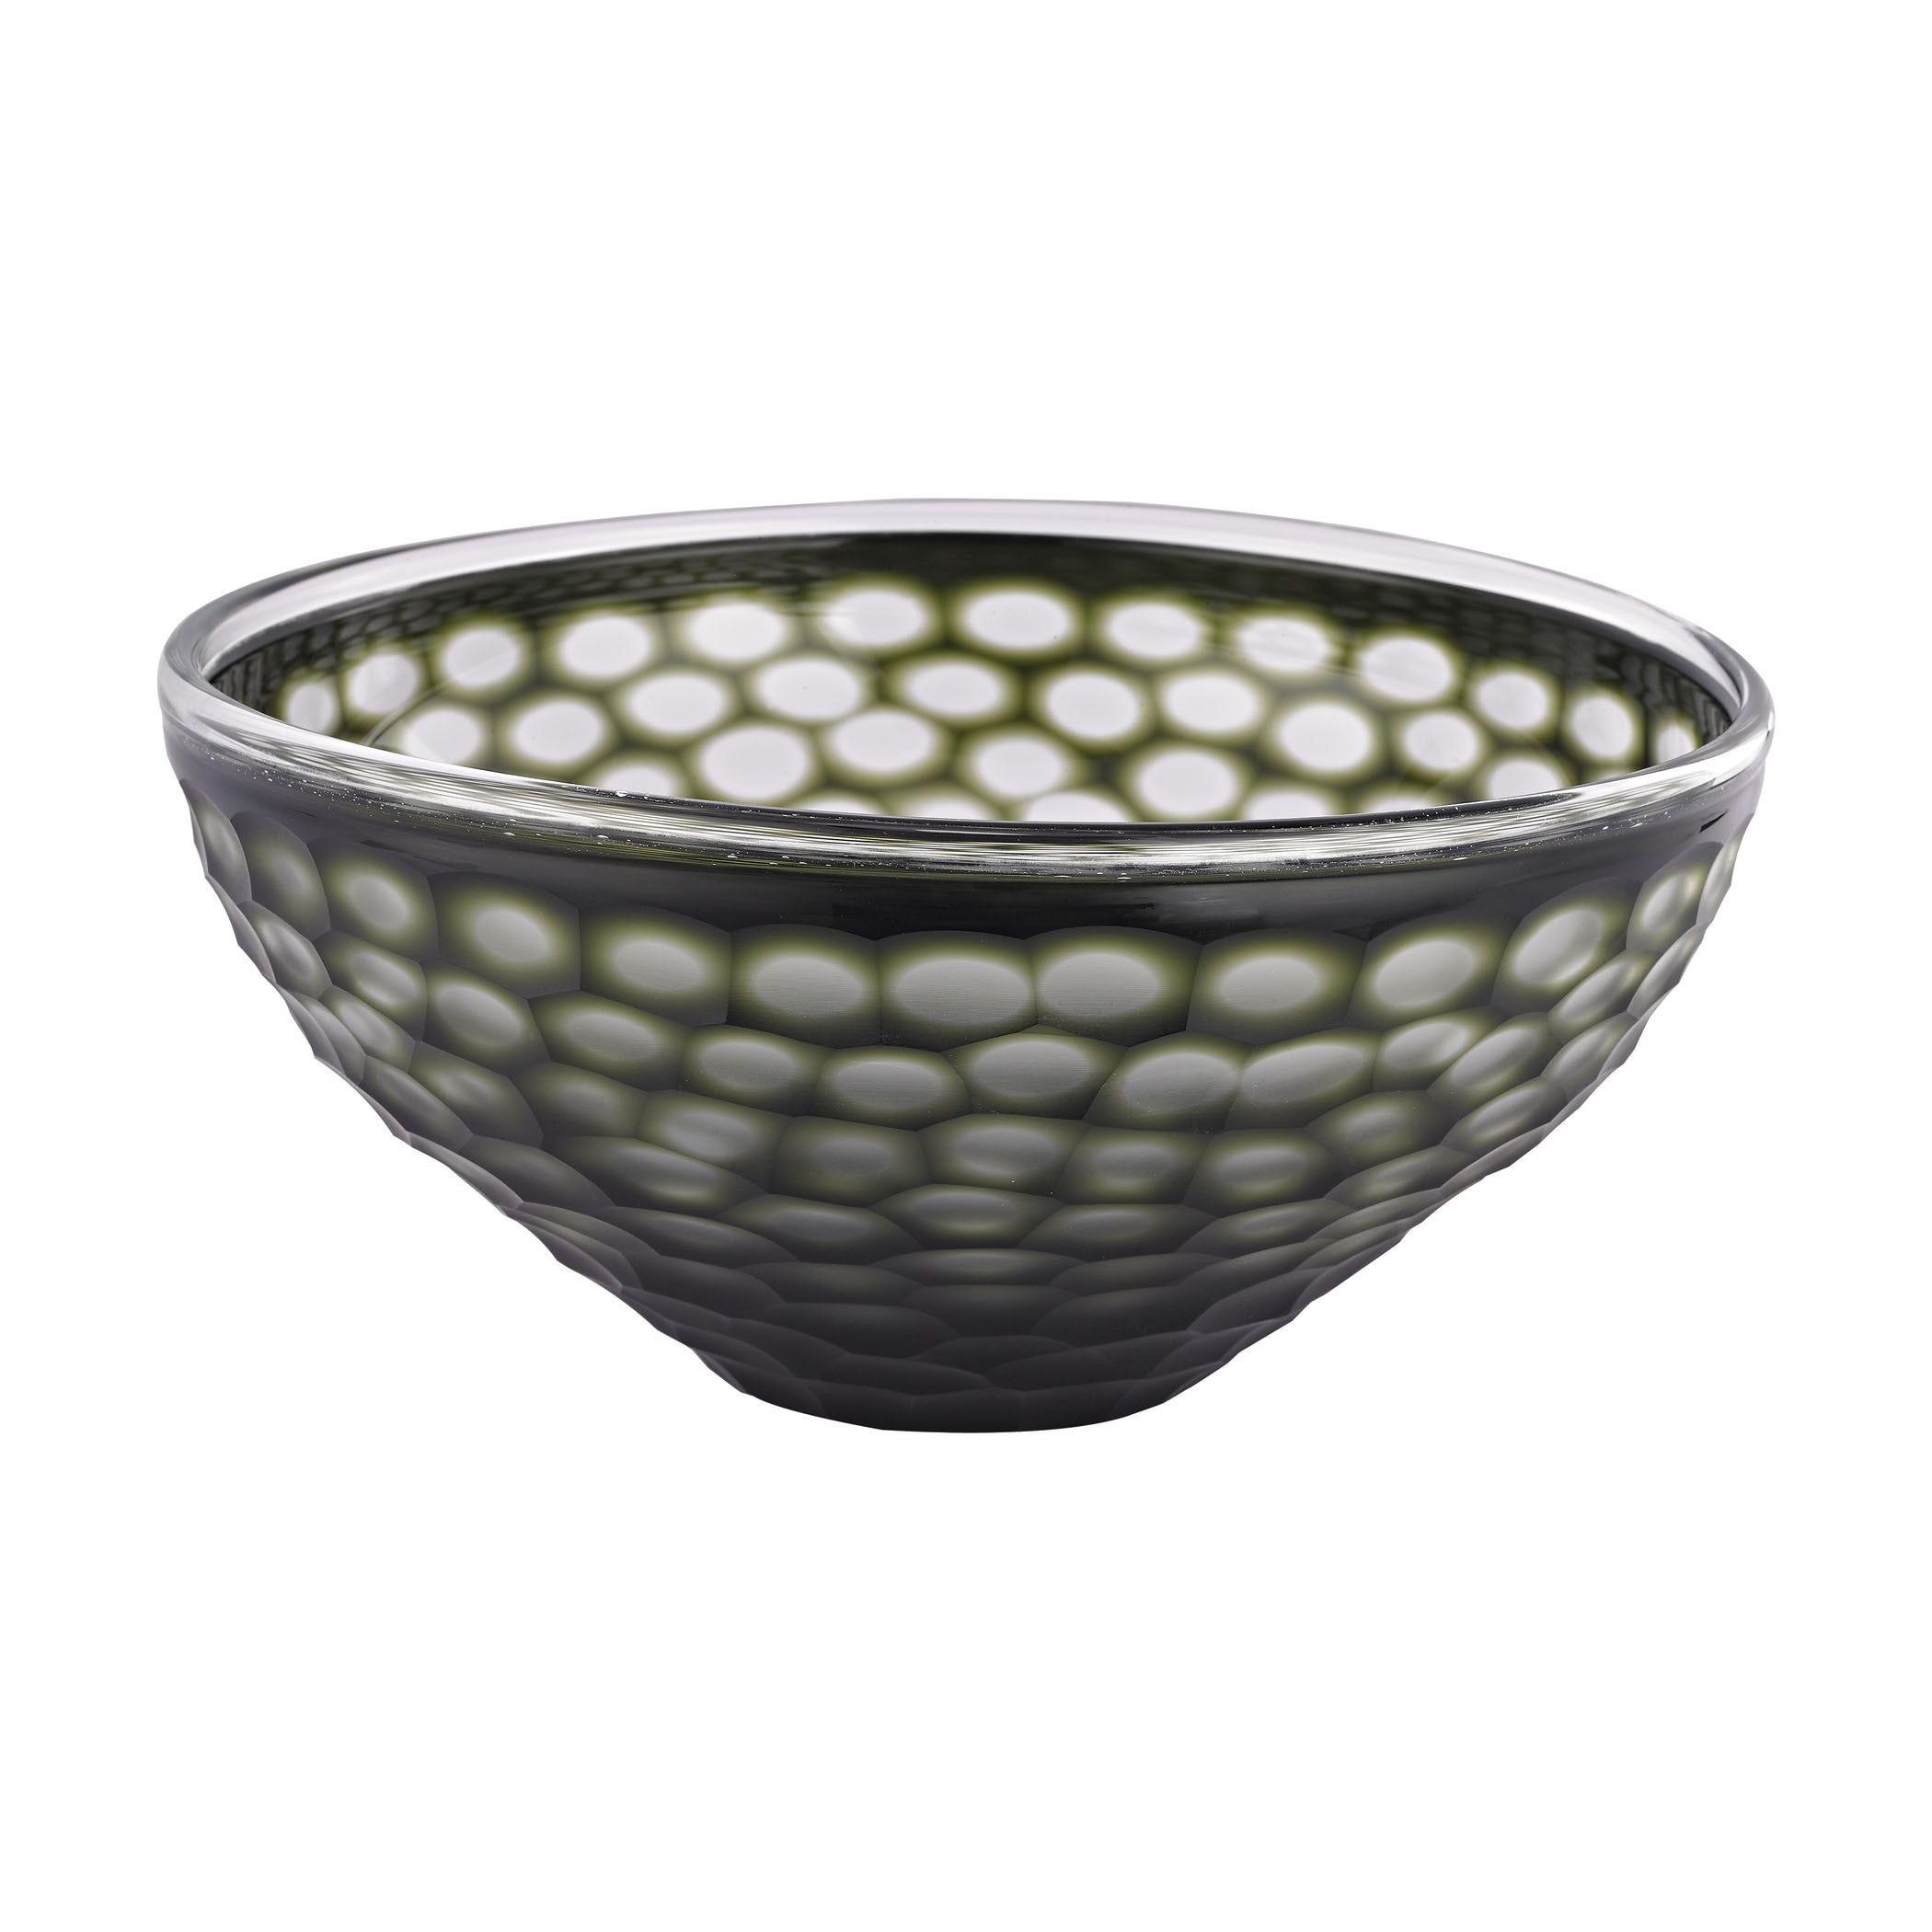 Guildmaster Gui-4154-042 Gogli Collection Green,black Finish Bowl